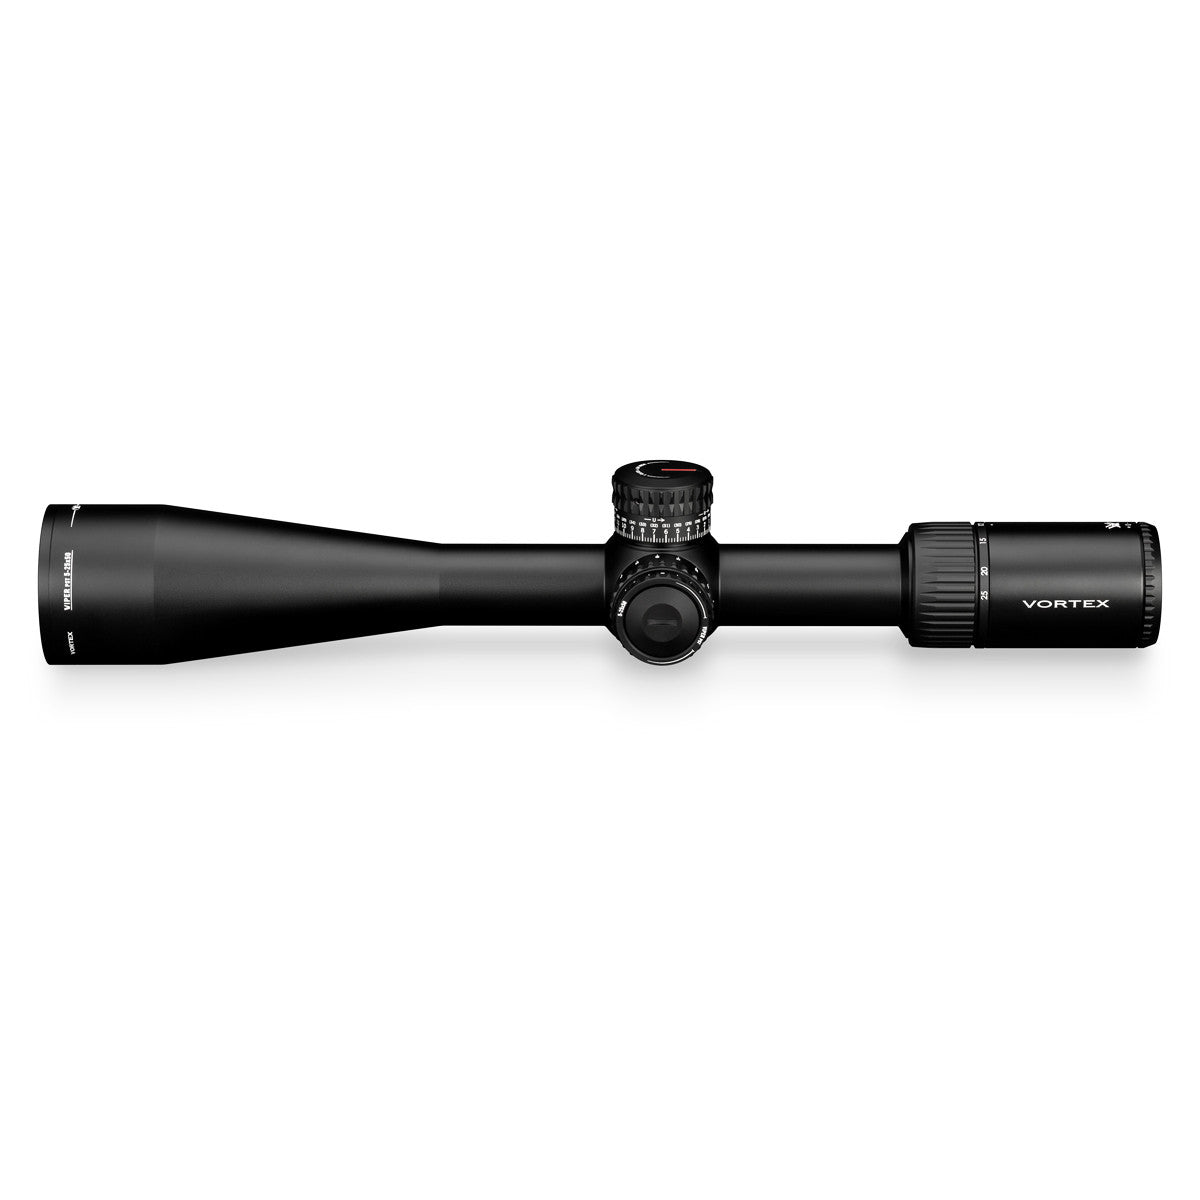 Vortex Viper PST Gen II 5-25x50 SFP Riflescope - goHUNT Shop